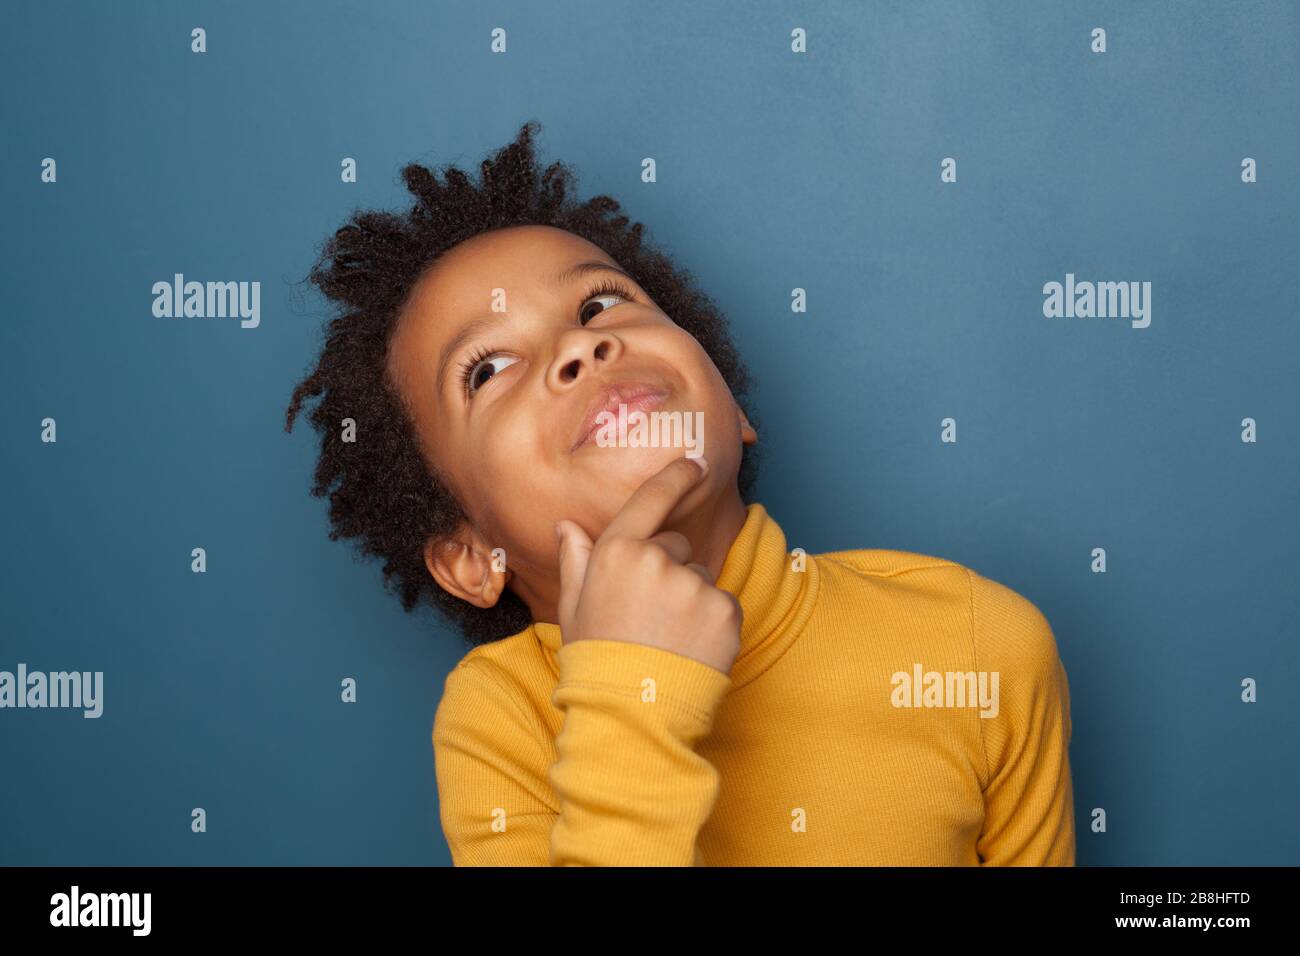 Niño pequeño negro pensando y mirando hacia arriba sobre fondo azul Foto de stock